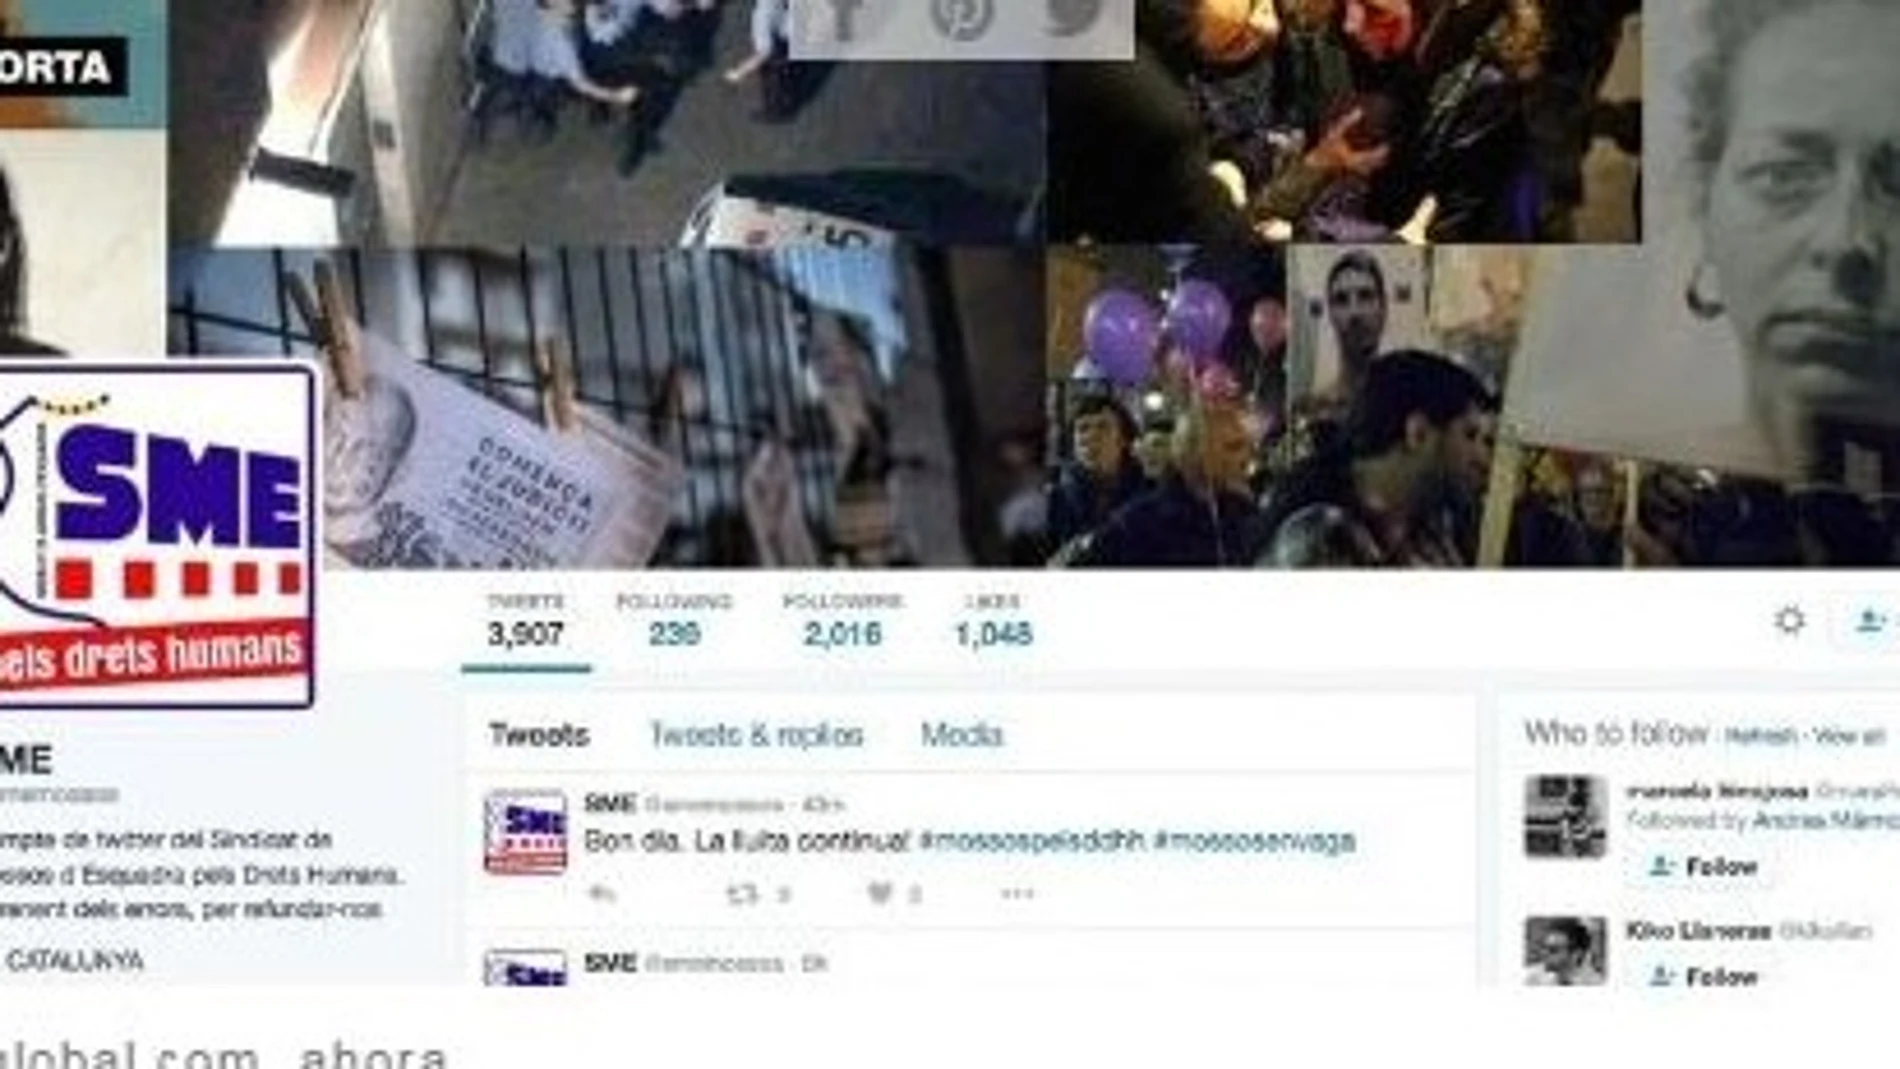 La imagen de la cuenta de Twitter del SME también fue modificada con imágenes del documental «Ciutat Morta»